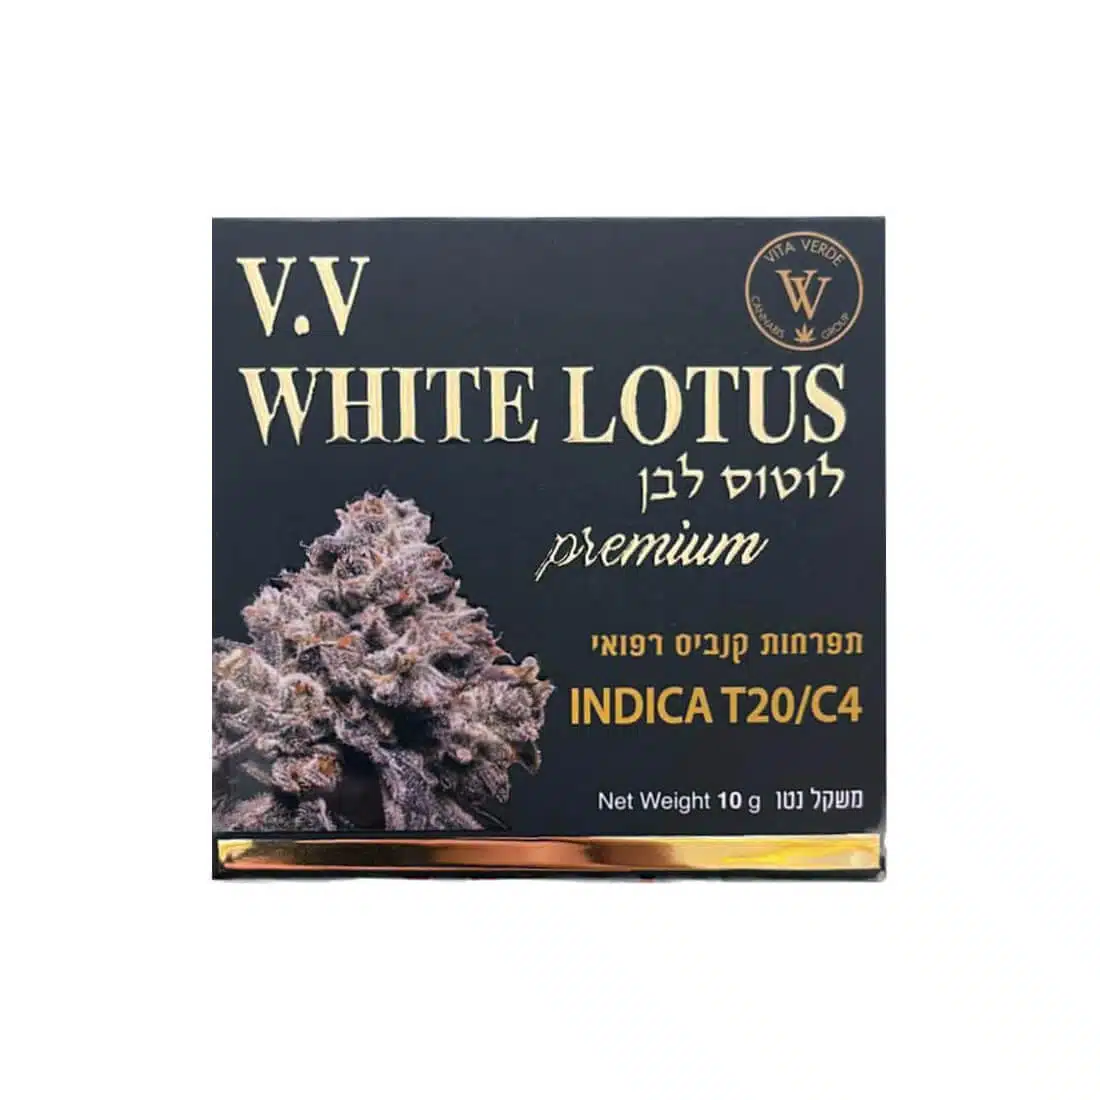 ווייט לוטוס לבן (white lotus) אינדיקה t20/c4